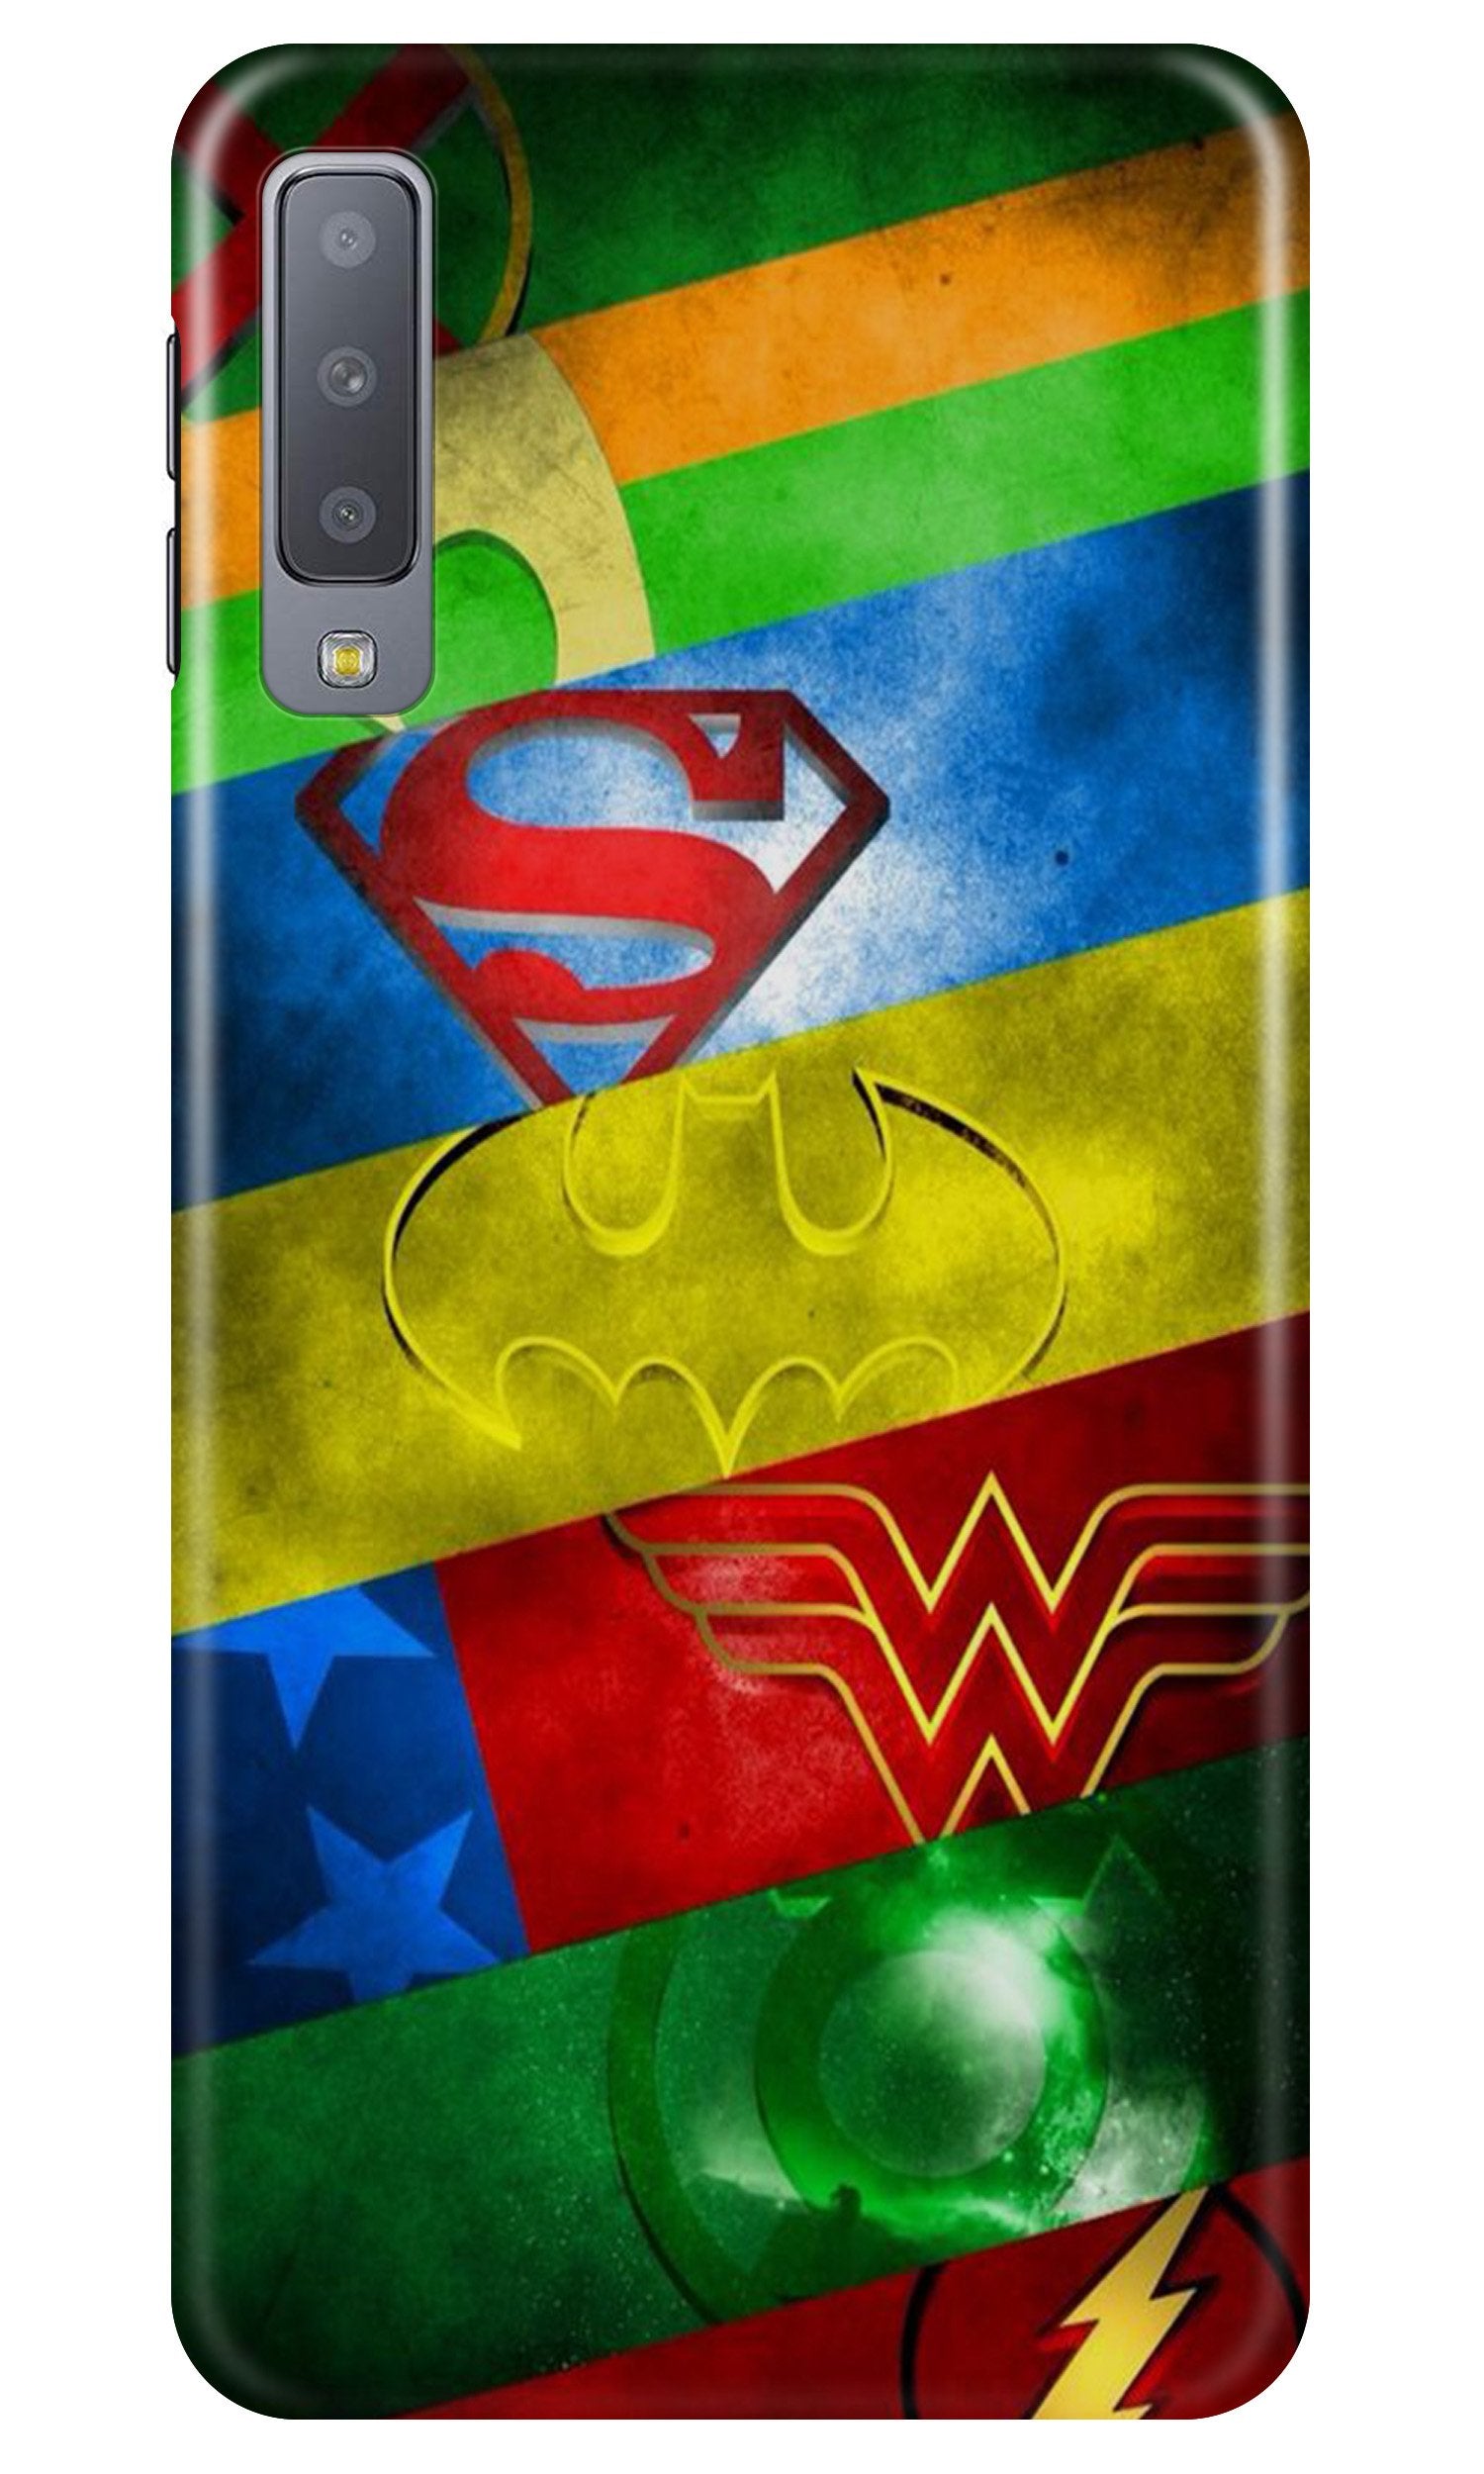 Superheros Logo Case for Samung Galaxy A70s (Design No. 251)